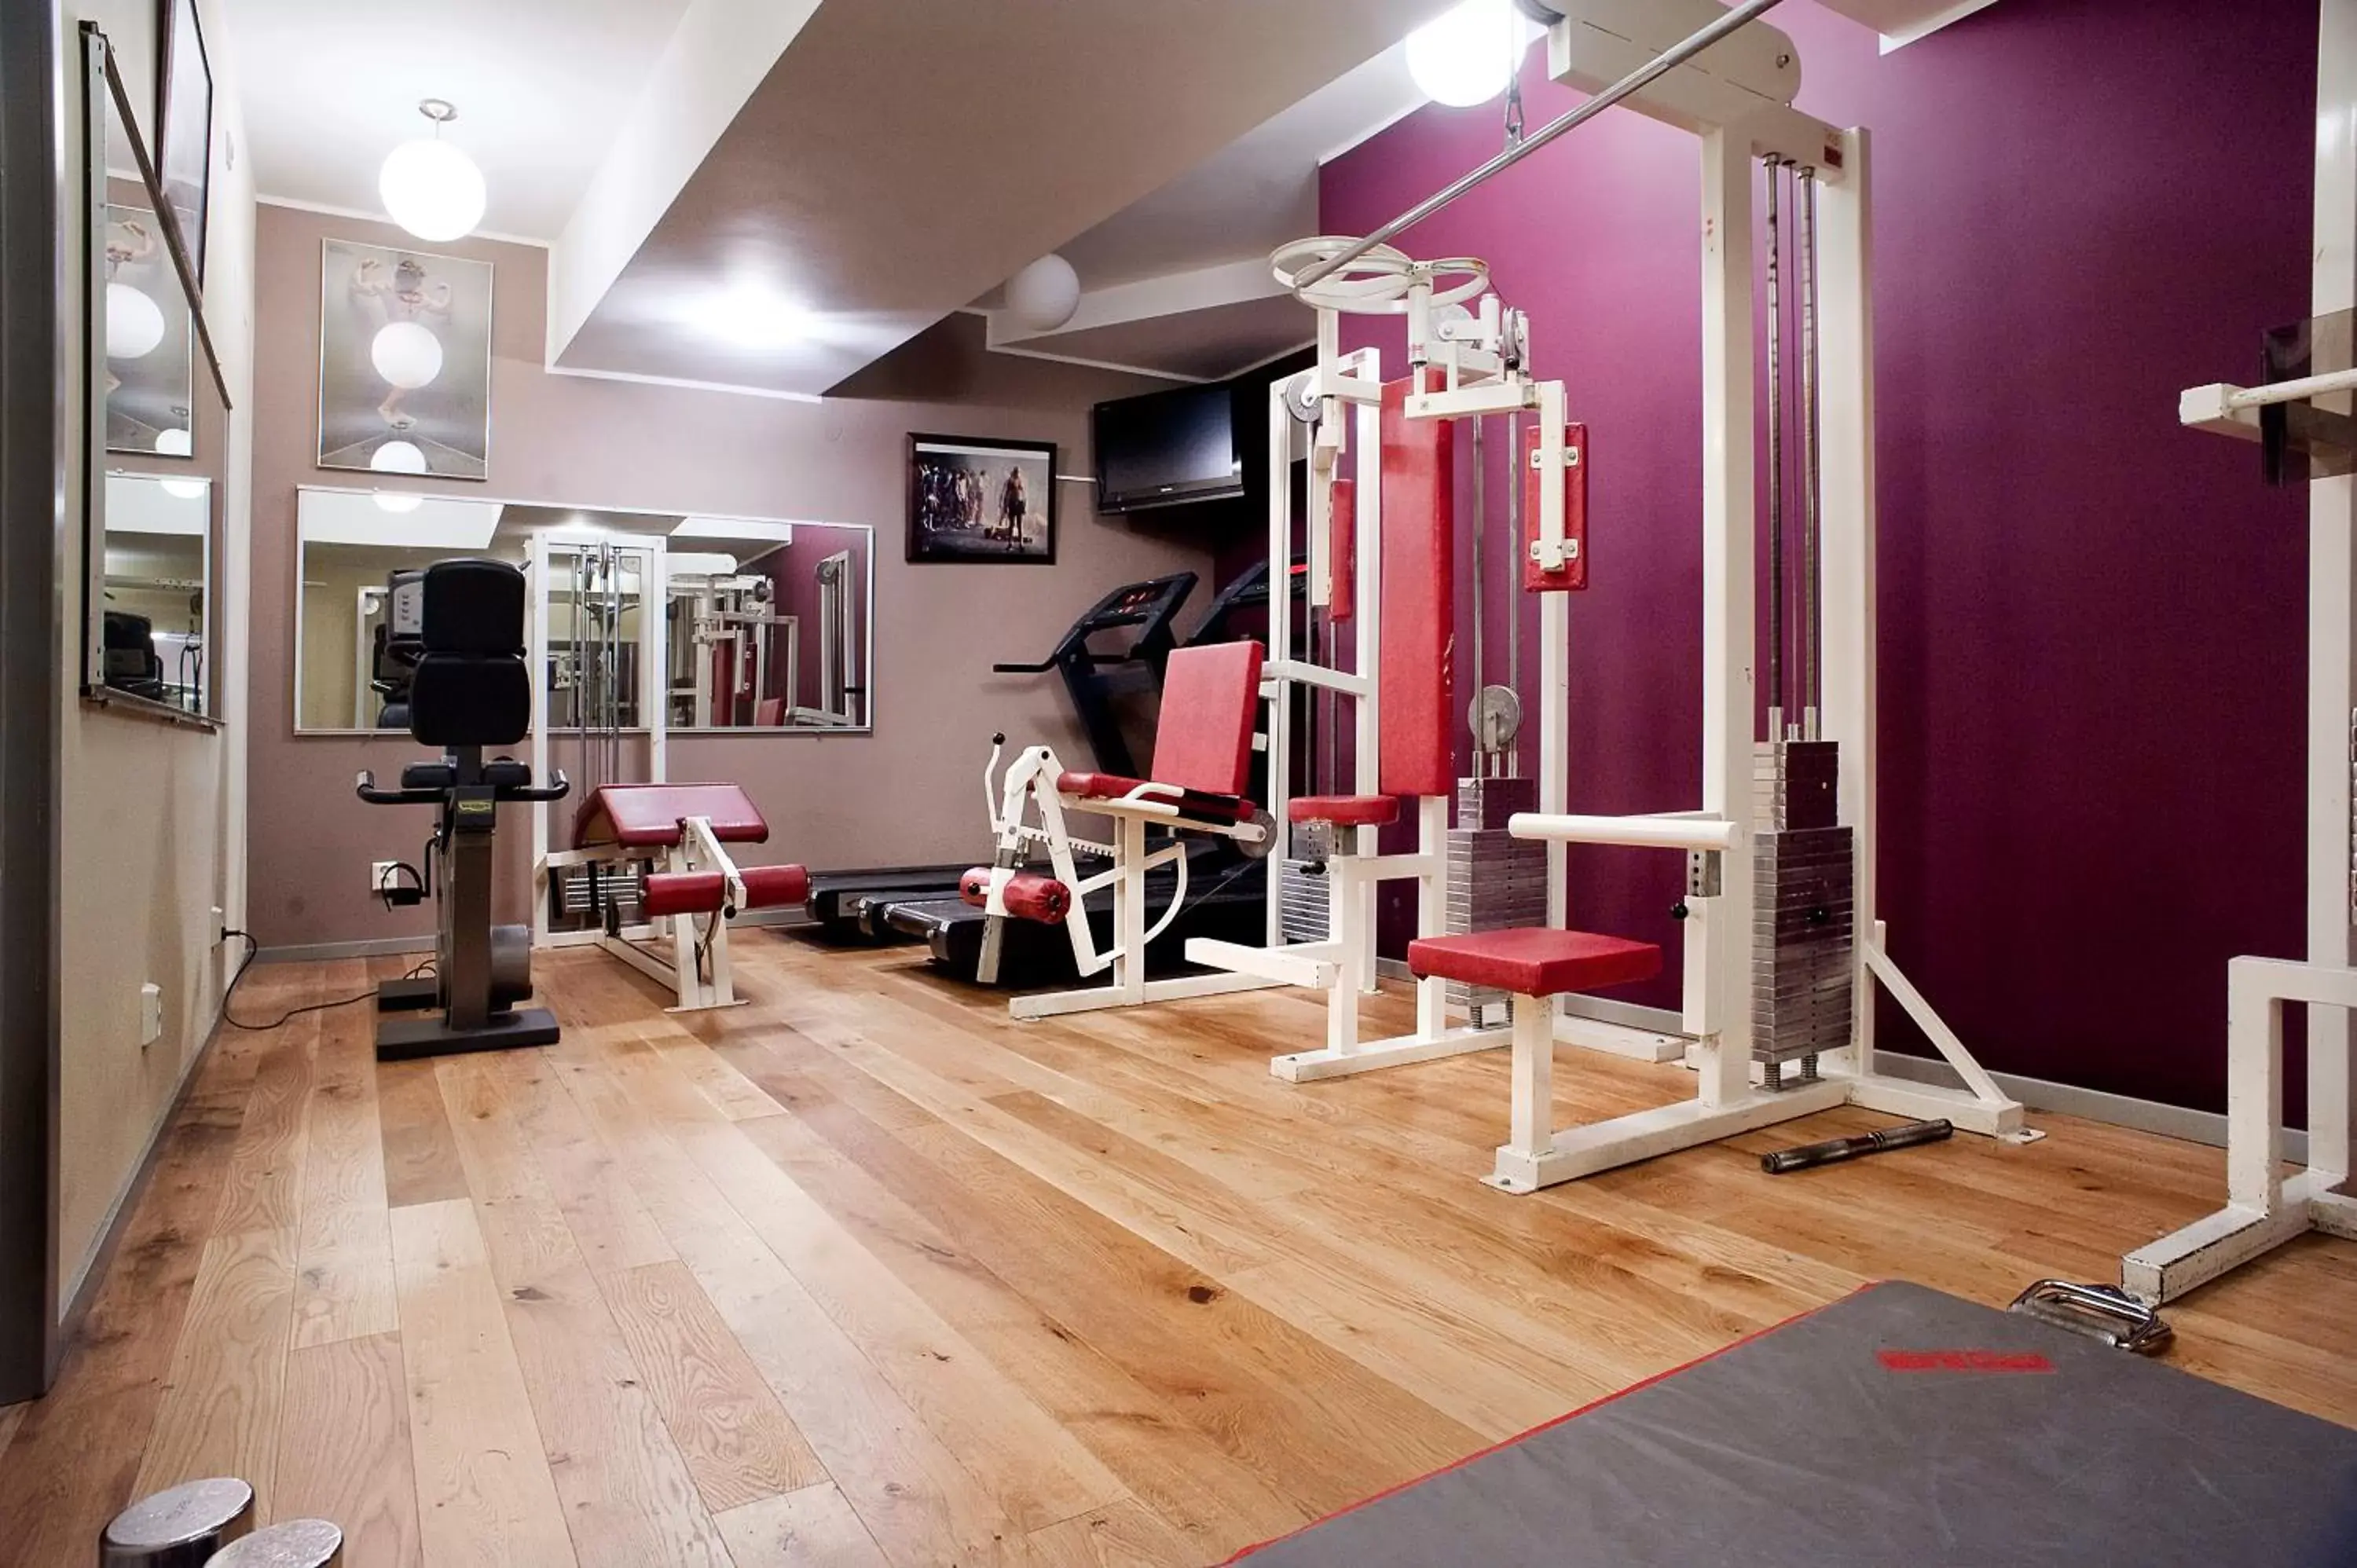 Fitness centre/facilities, Fitness Center/Facilities in Hotel Hellsten